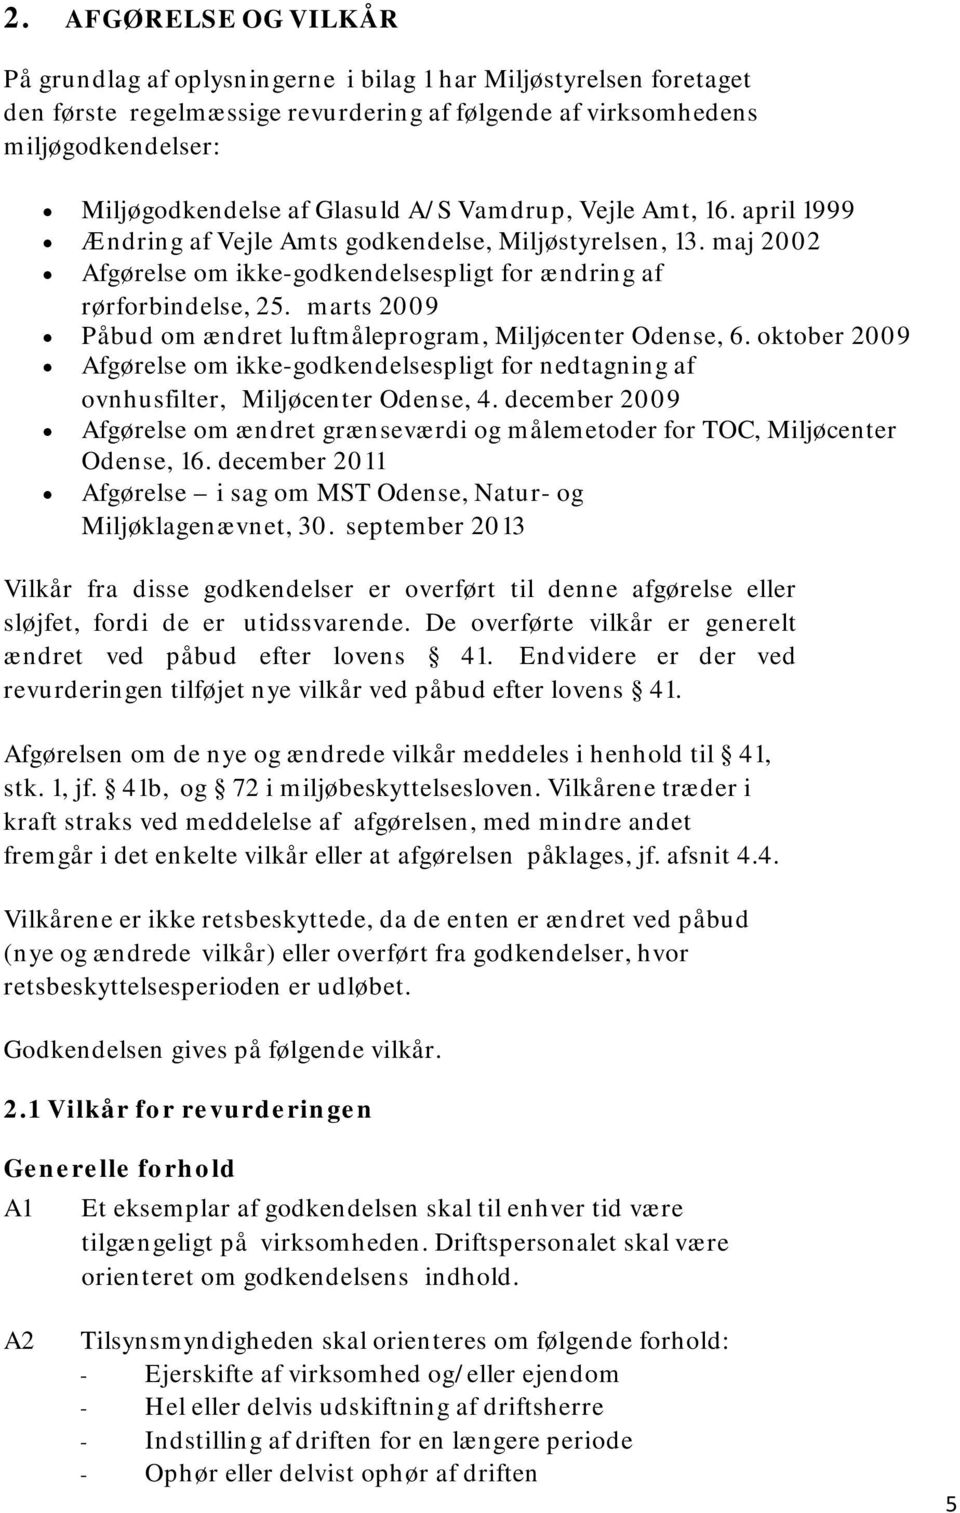 marts 2009 Påbud om ændret luftmåleprogram, Miljøcenter Odense, 6. oktober 2009 Afgørelse om ikke-godkendelsespligt for nedtagning af ovnhusfilter, Miljøcenter Odense, 4.